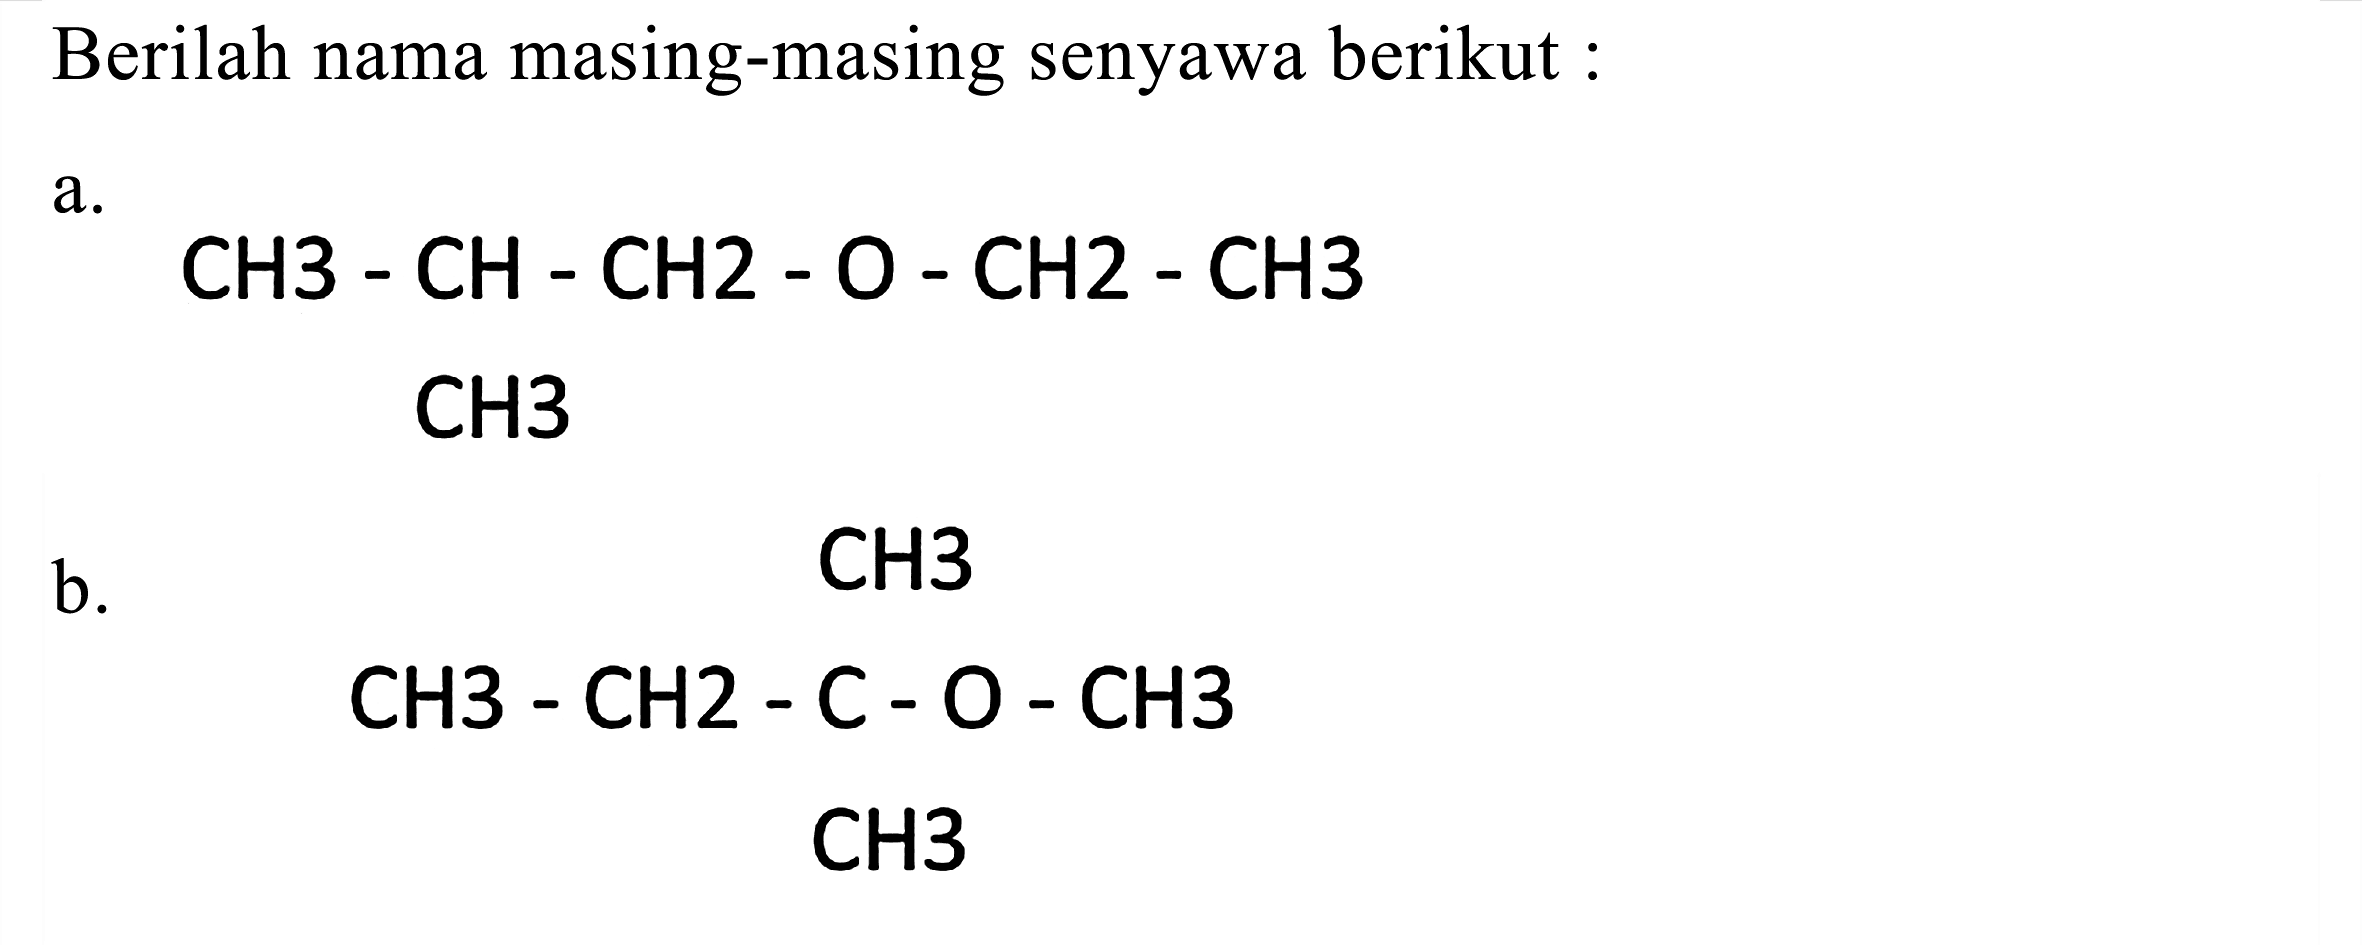 Berilah nama masing-masing senyawa berikut :
a.
CH 3-CH-CH 2-O-CH 2-CH 3 
CH3
b.
CH3
CH 3-CH 2-C-O-CH 3 
CH 3 